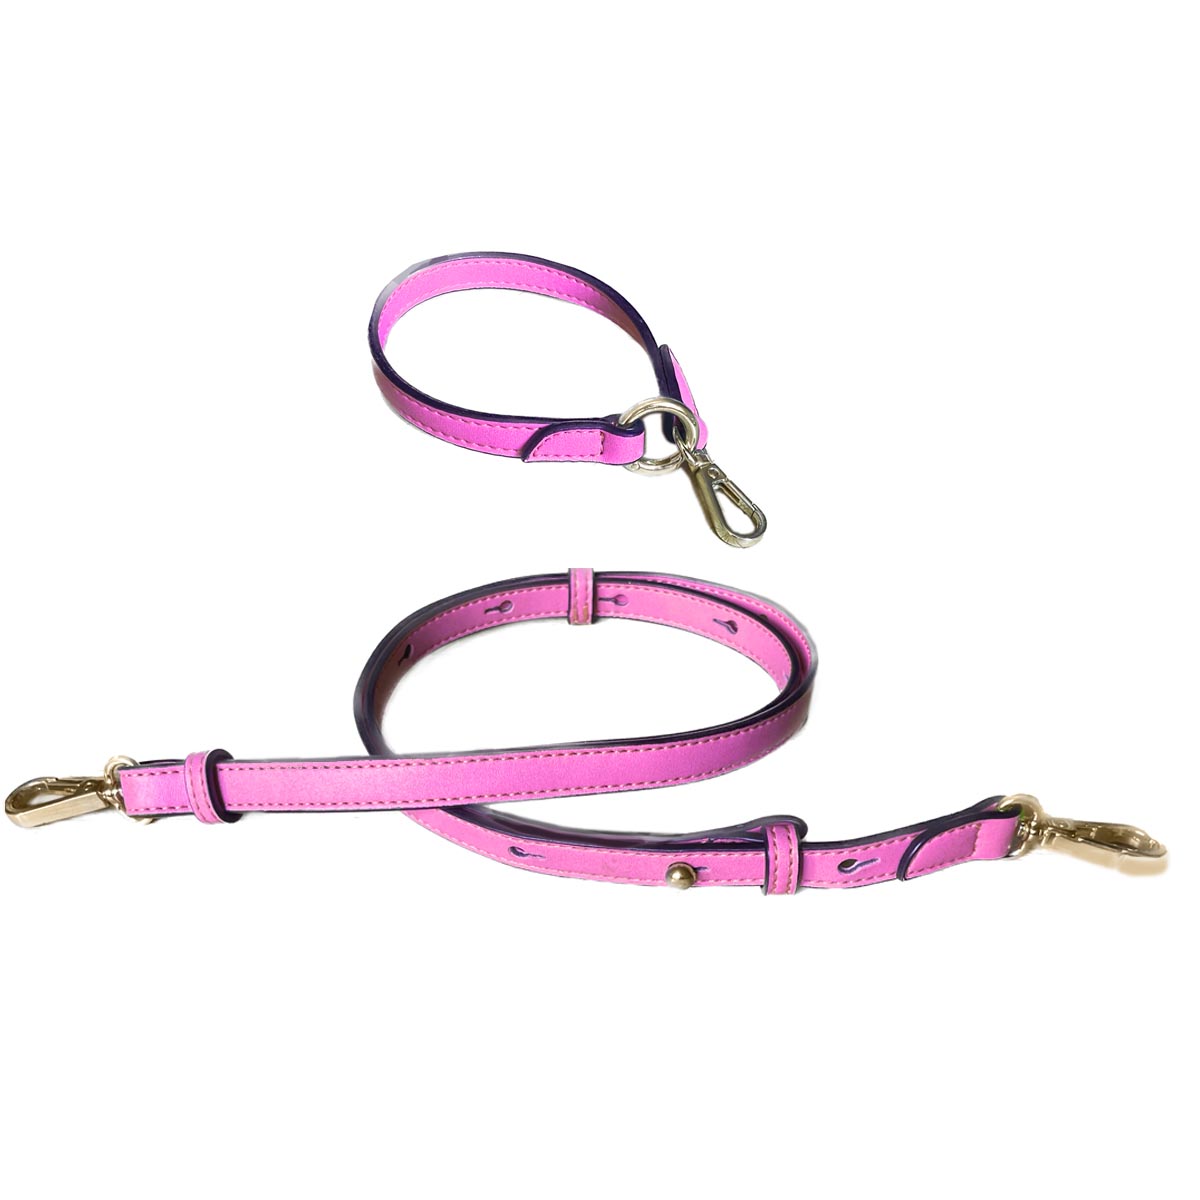 Schultergurt längenverstellbarer Riemen Pinker Riemen Loop-Keyring Schlüsselanhänger Pink mit Gold Metal Karabiner